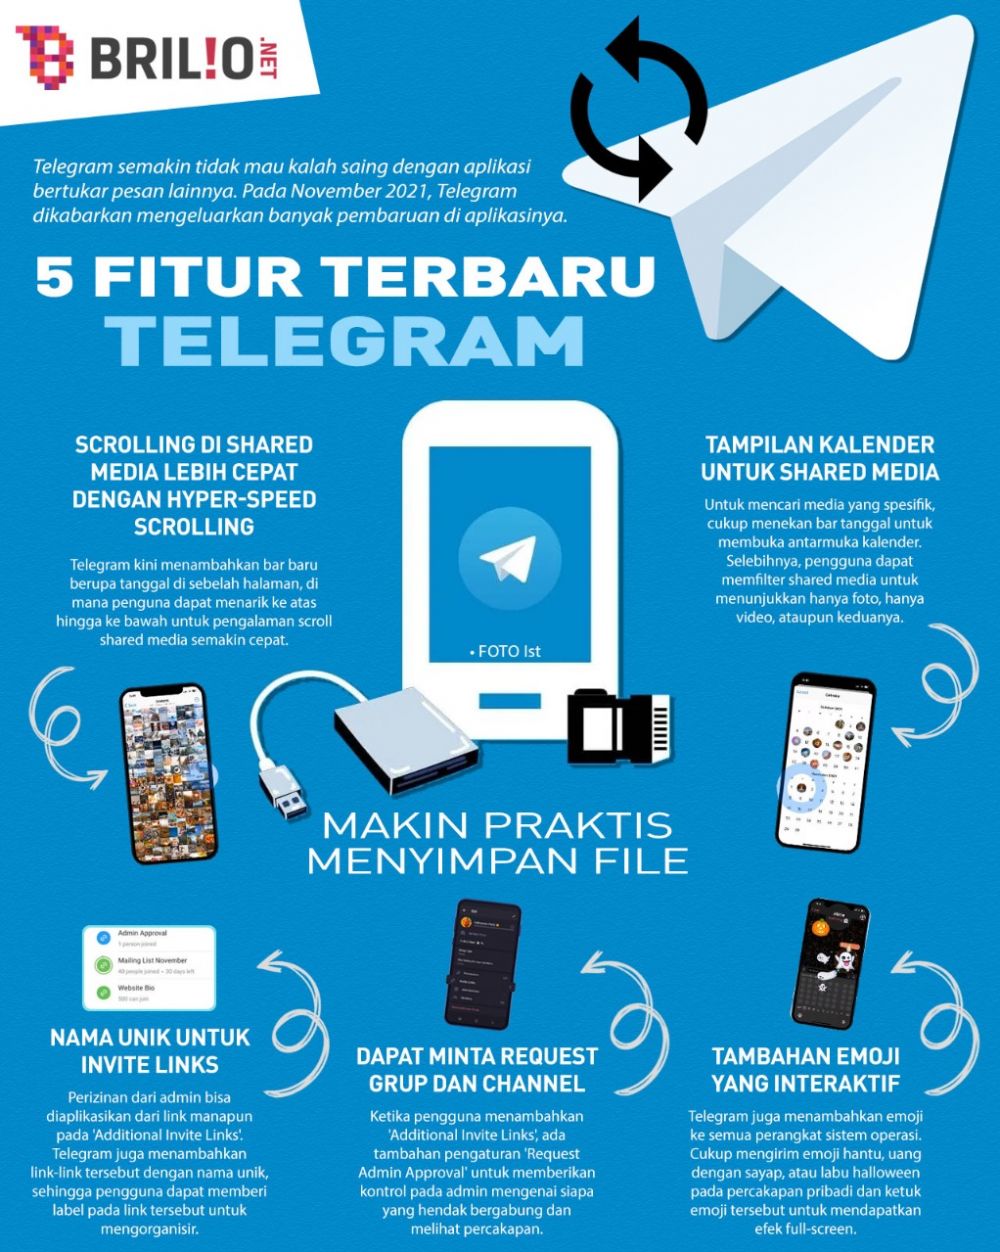 Telegram segera pasang iklan di aplikasi untuk raup penghasilan lebih